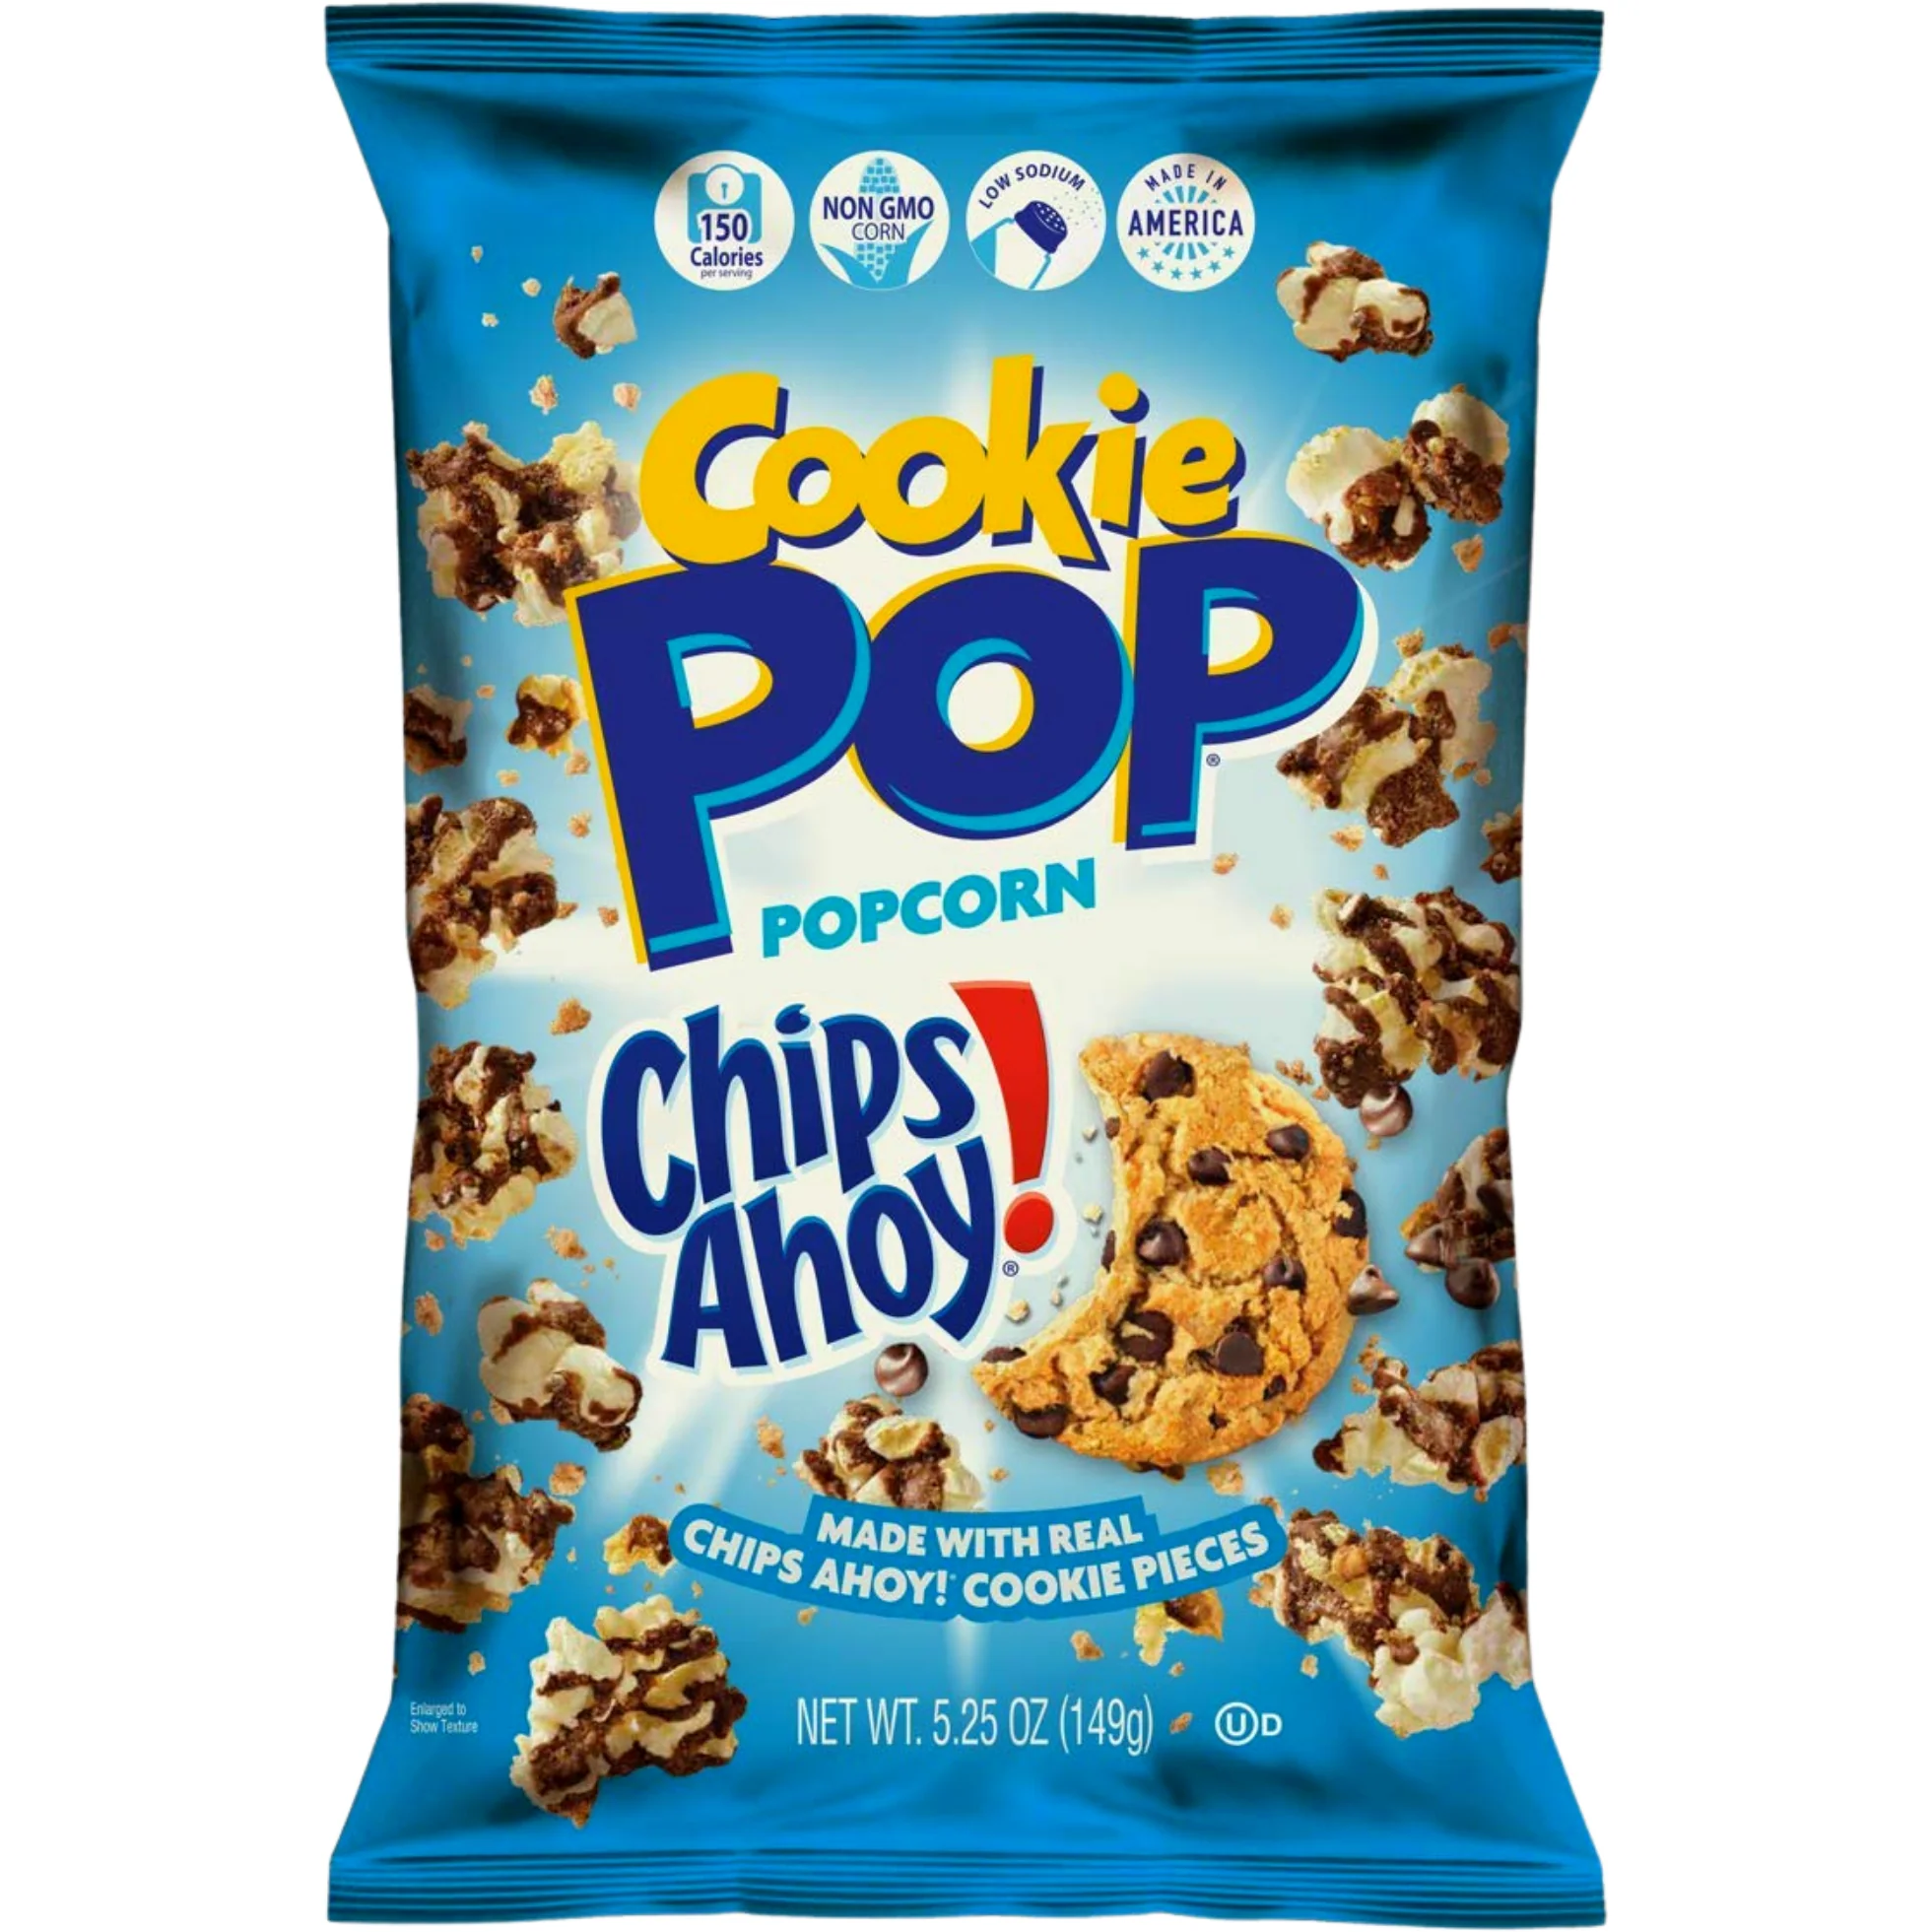 Cookiepop Popcorn Chips Ahoy